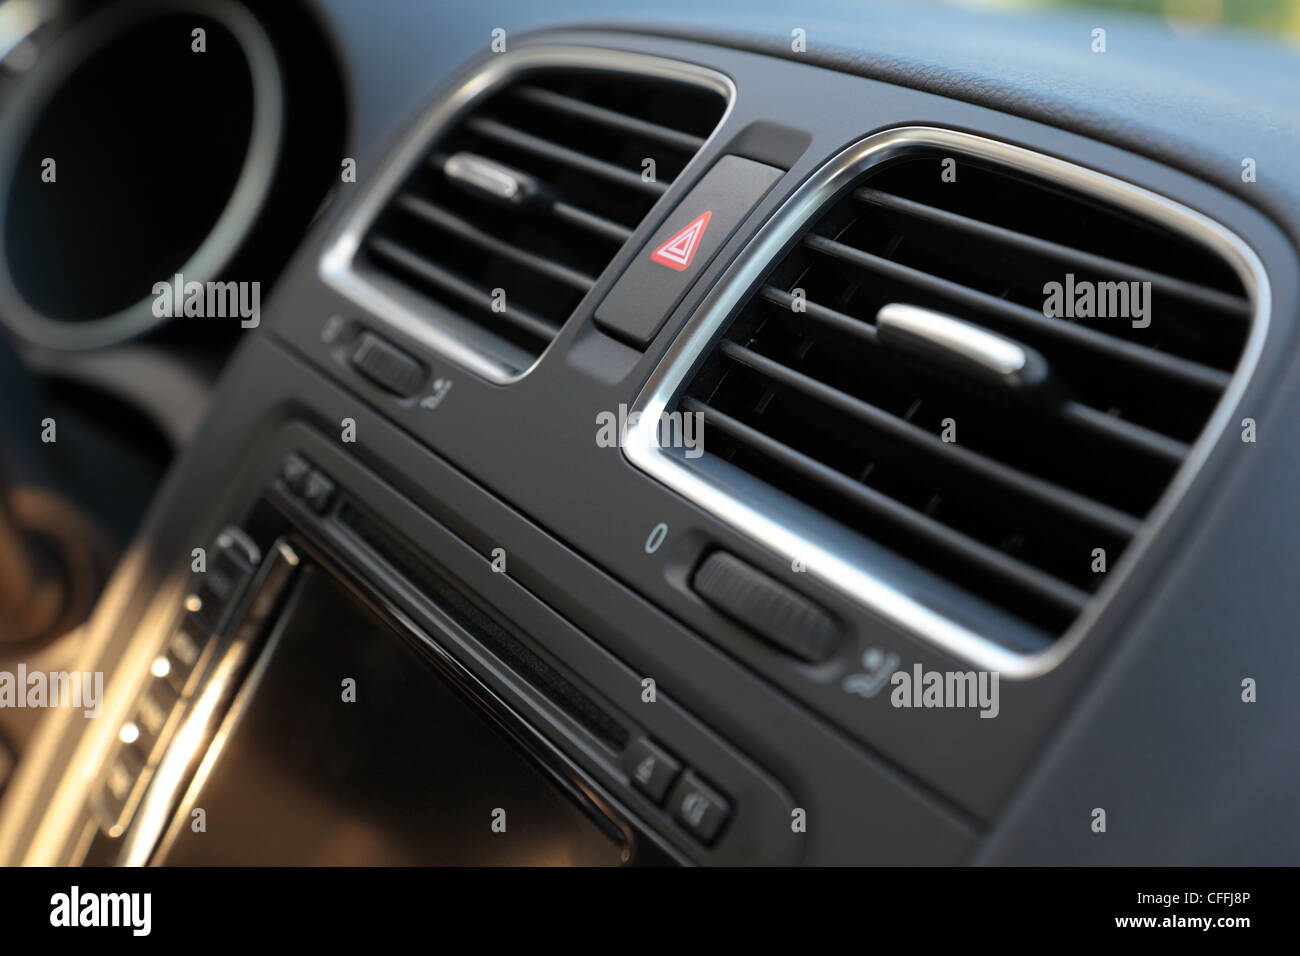 Los autos modernos detalles interiores. Multimedia y sistemas de aire acondicionado. DOF superficial. Foto de stock